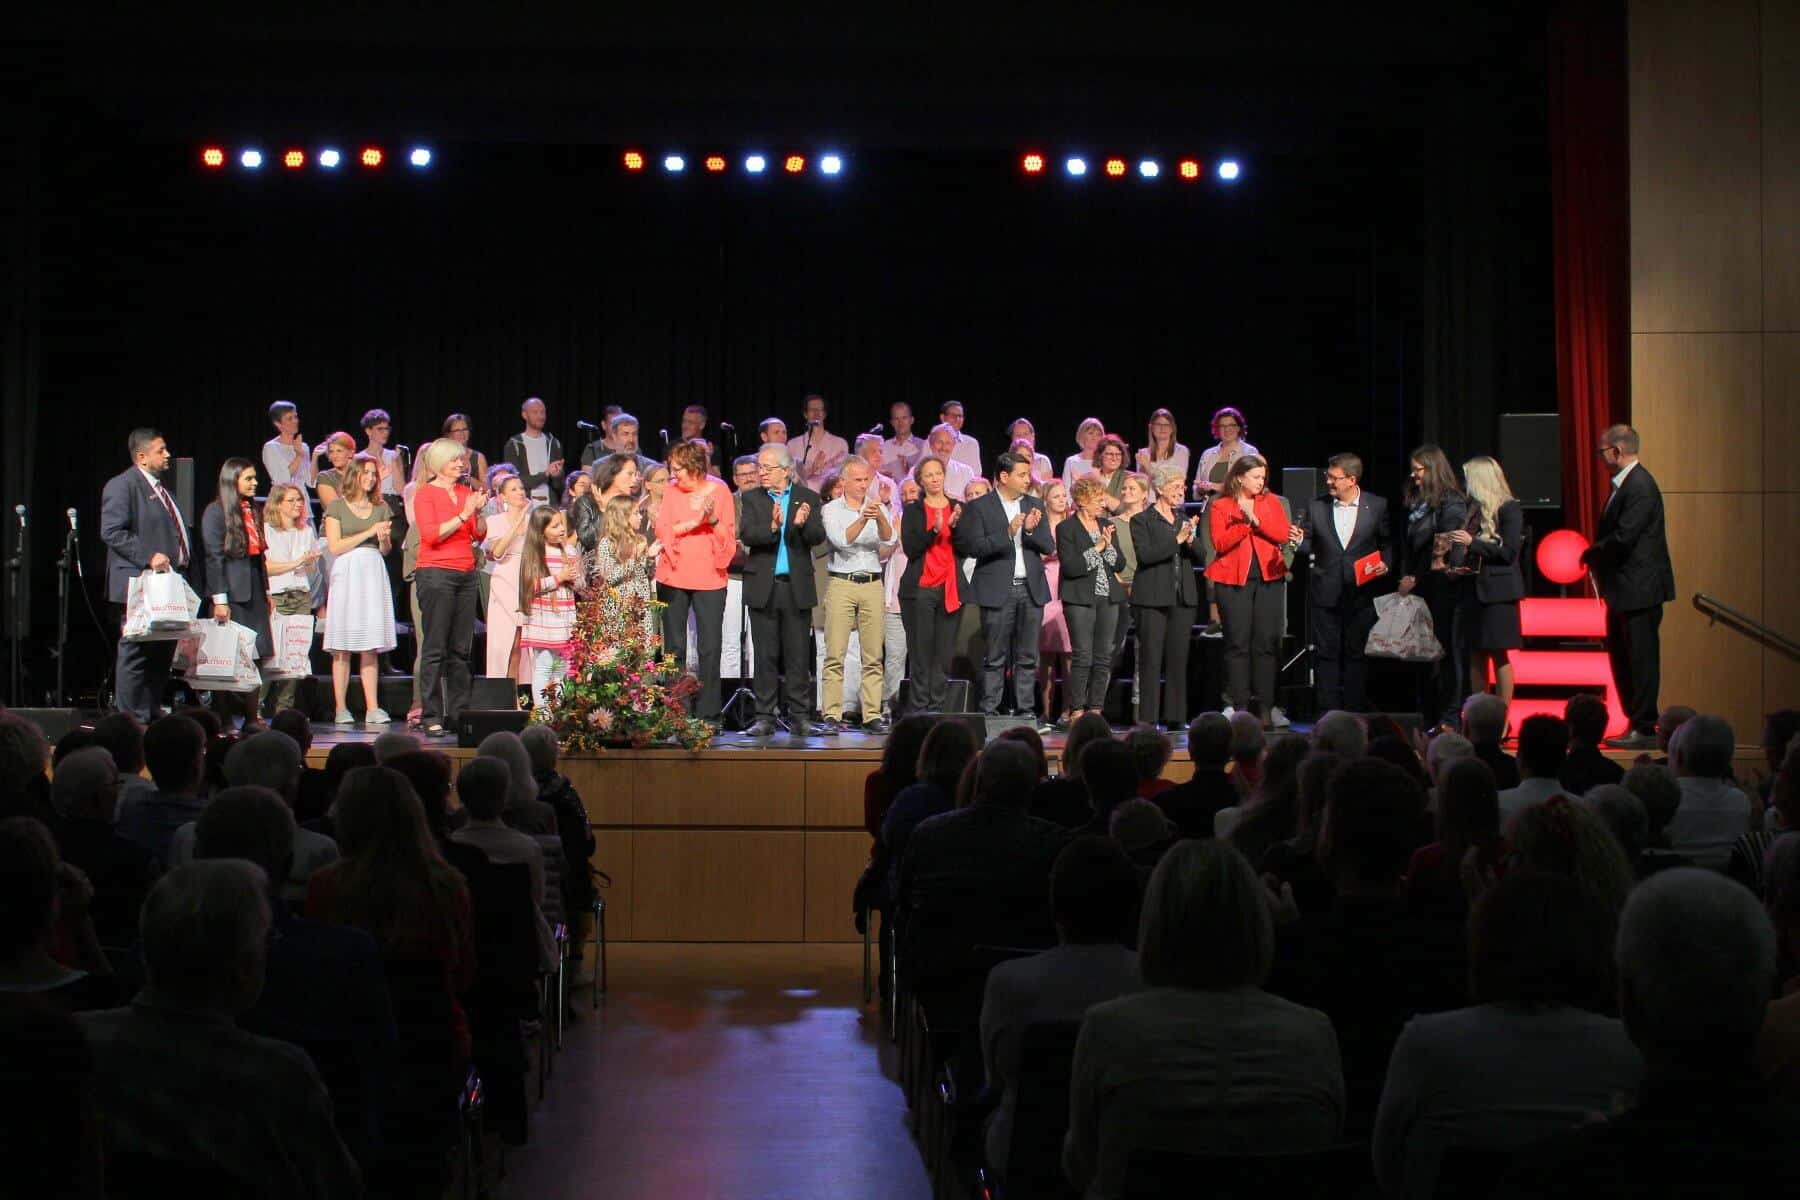 Sparkassen Chorfestival 2019: Vertreter der zwölf Chöre haben sich auf der Bühne versammelt, und warten gespannt, ob ihr Name aus dem Lostopf gezogen wird.